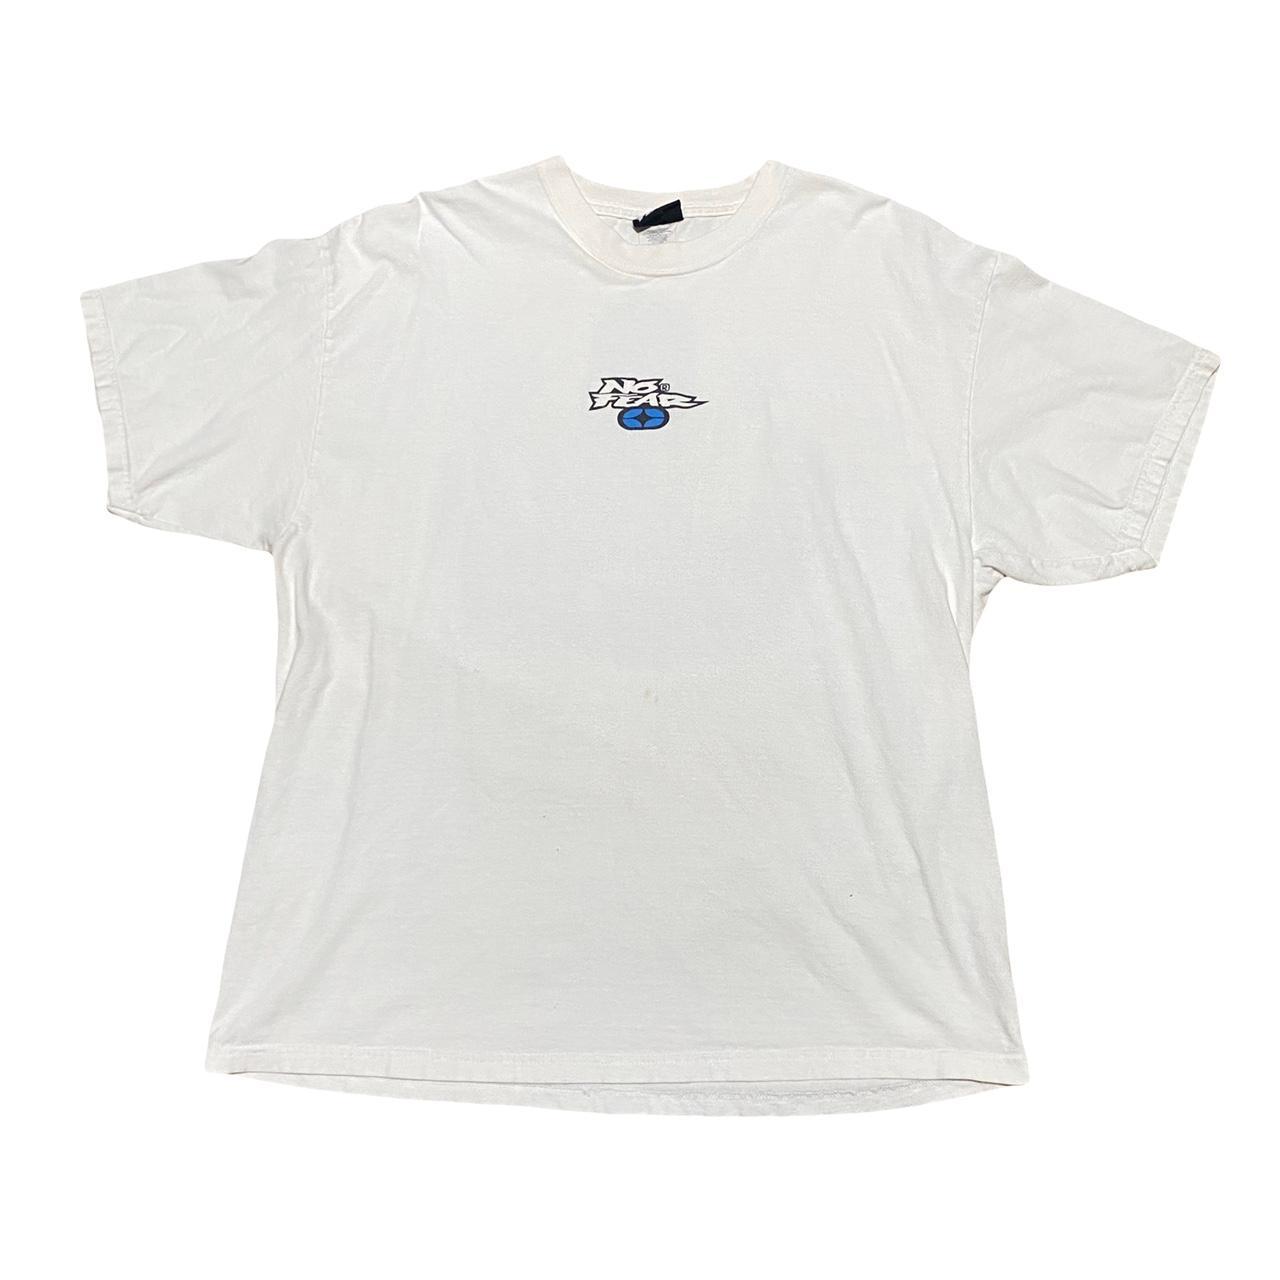 NoFear 90’s FMX T-Shirt SIZE: XL MEASUREMENTS 22